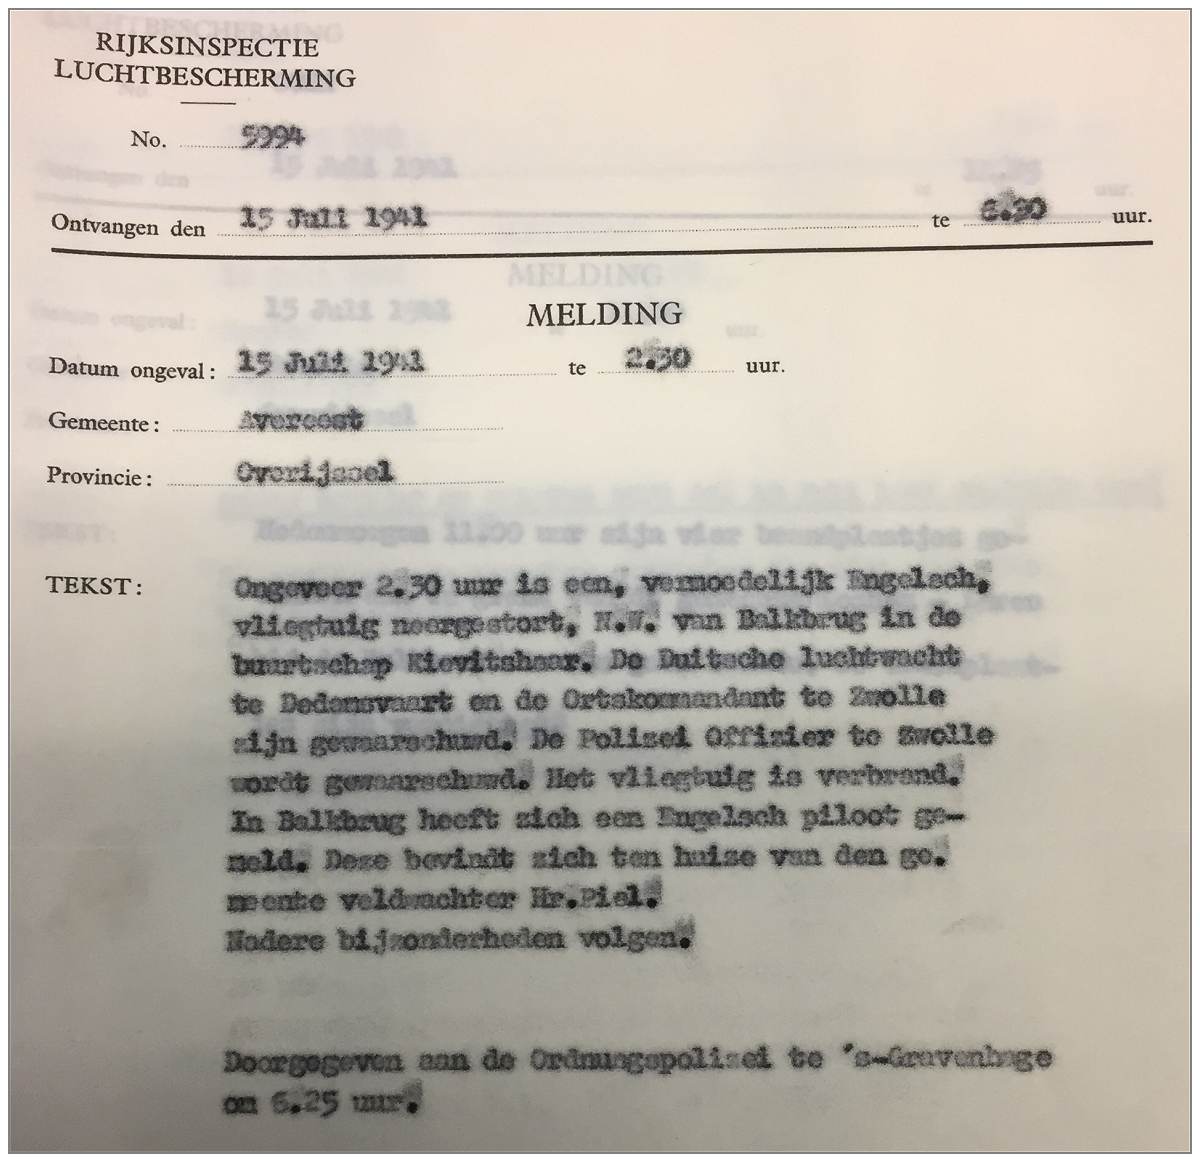 Rijksinspectie Luchtbescherming - 15 Jul 1941 - No. 5994